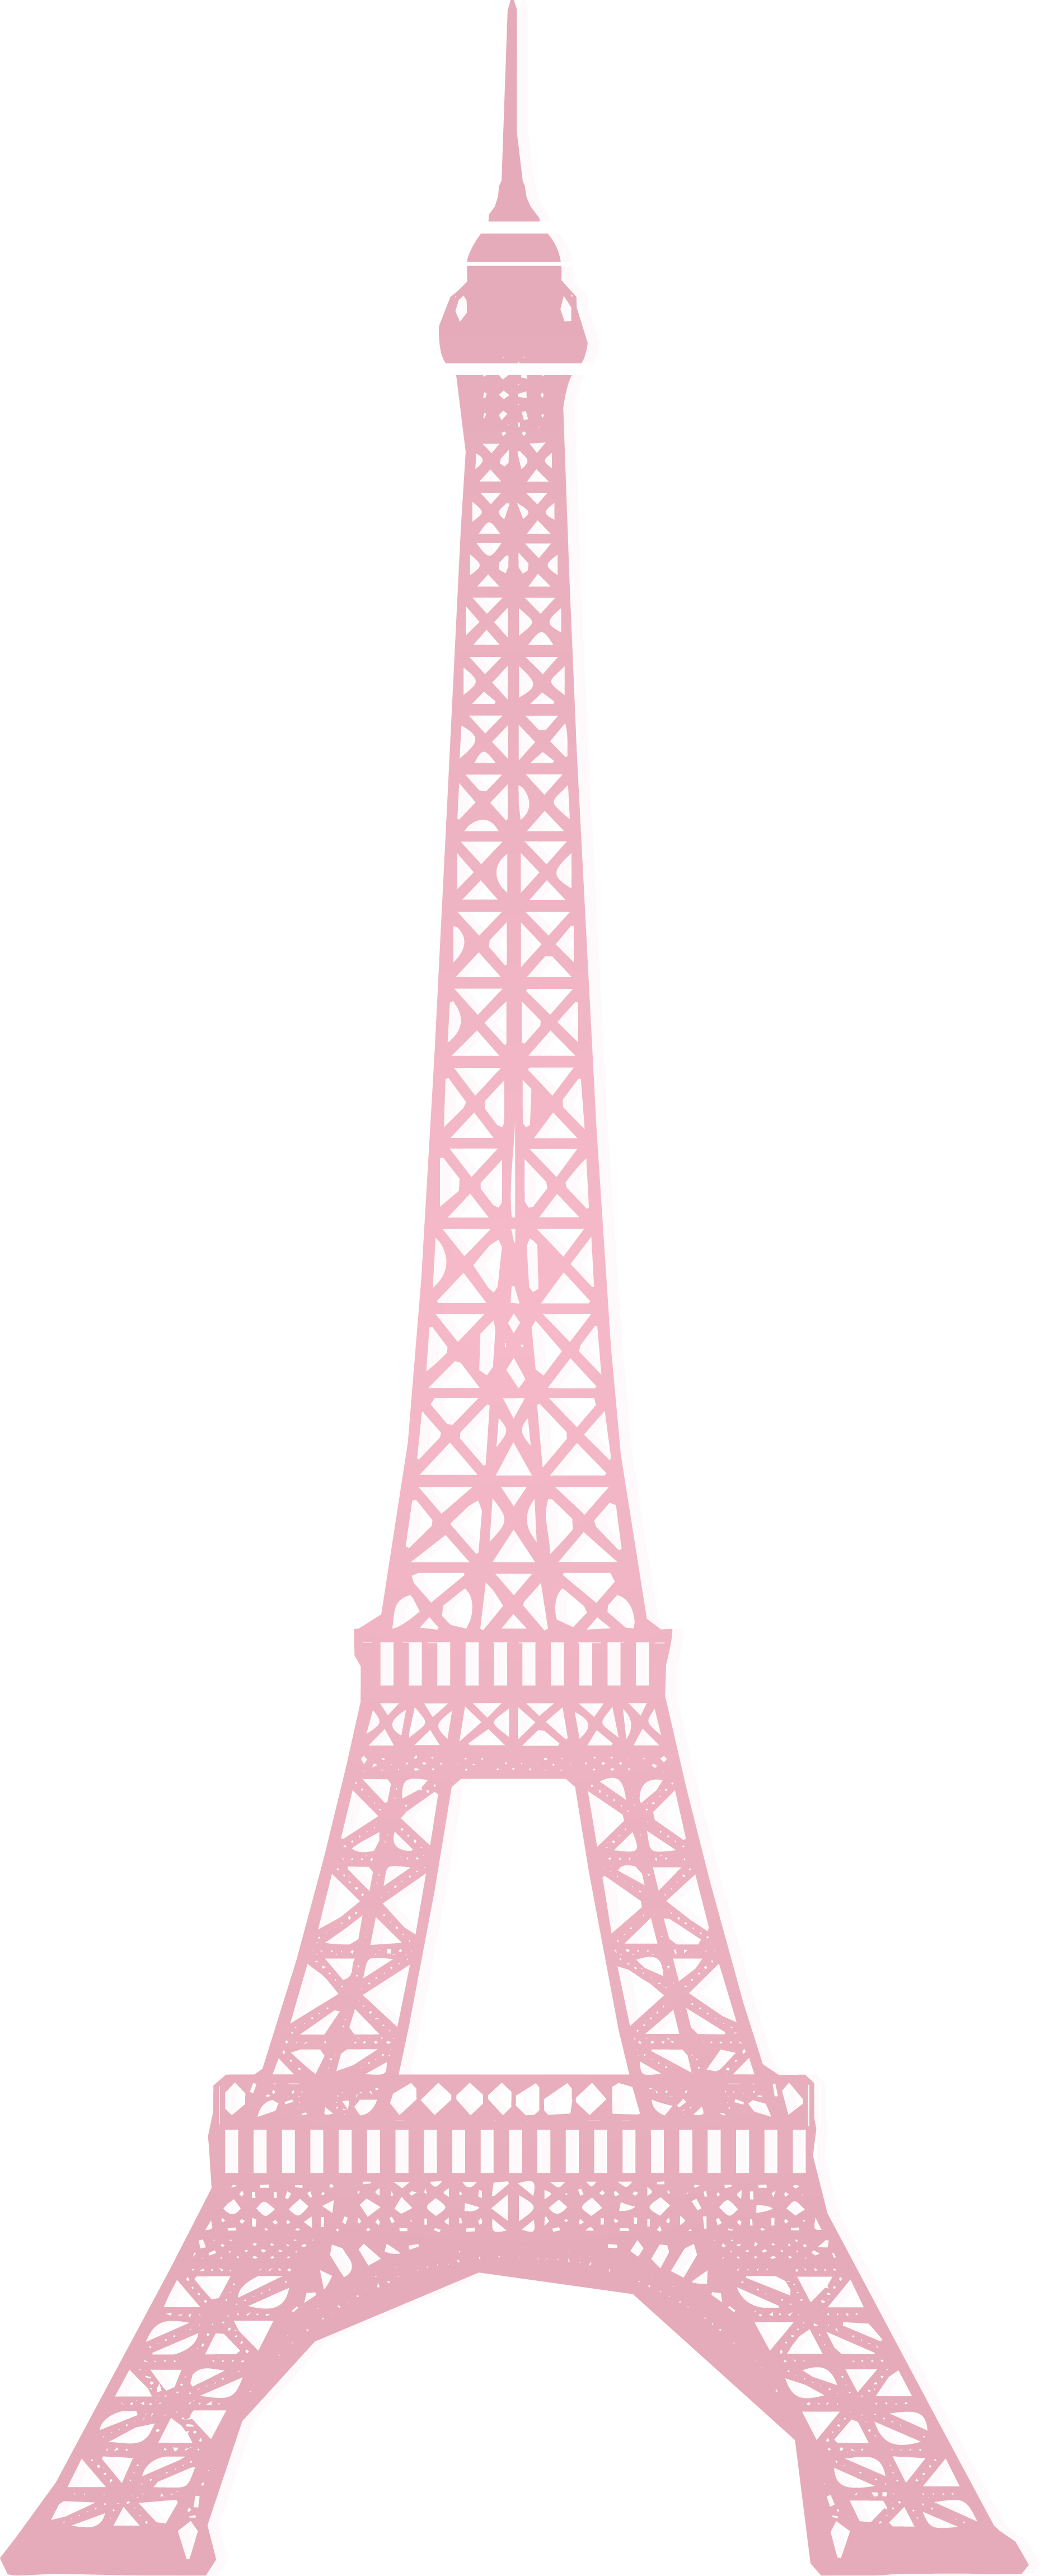 Tháp Eiffel